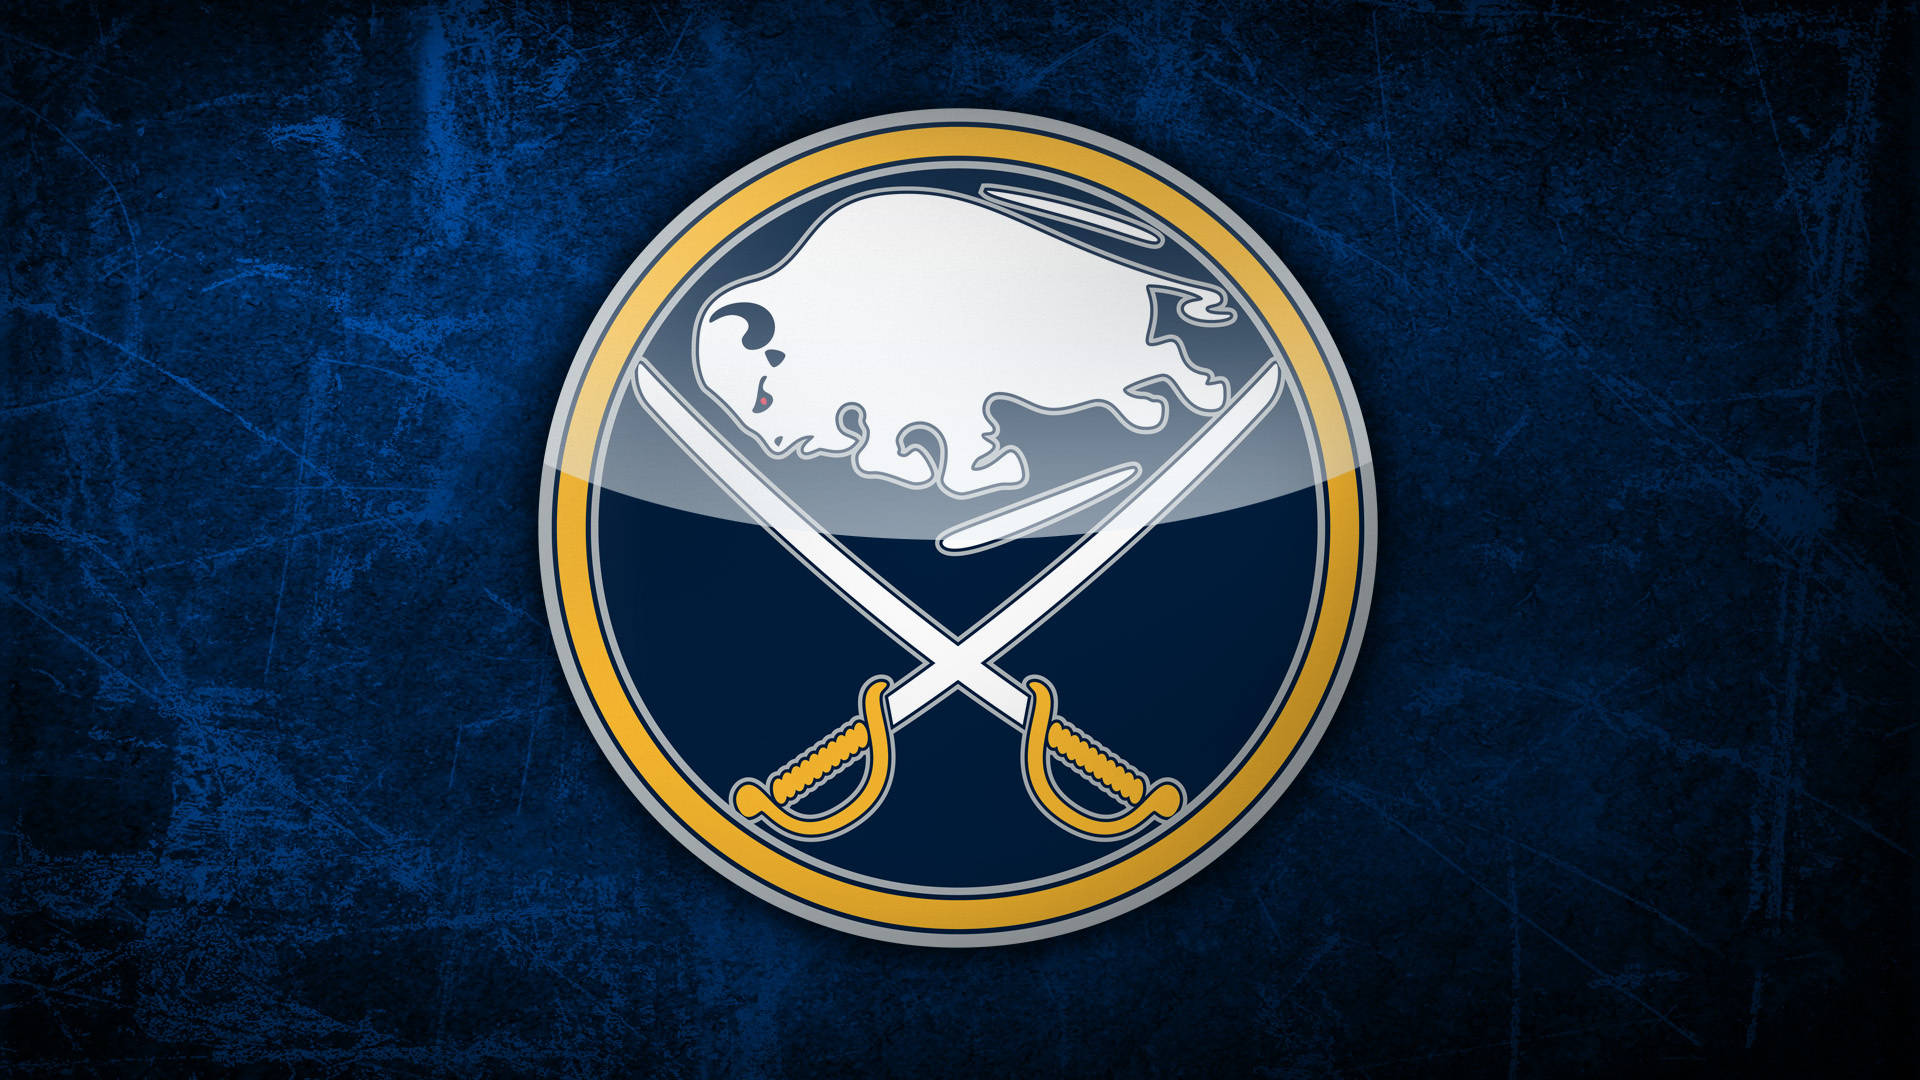 Buffalo Sabres' Emblem On Dark Blue Background Background